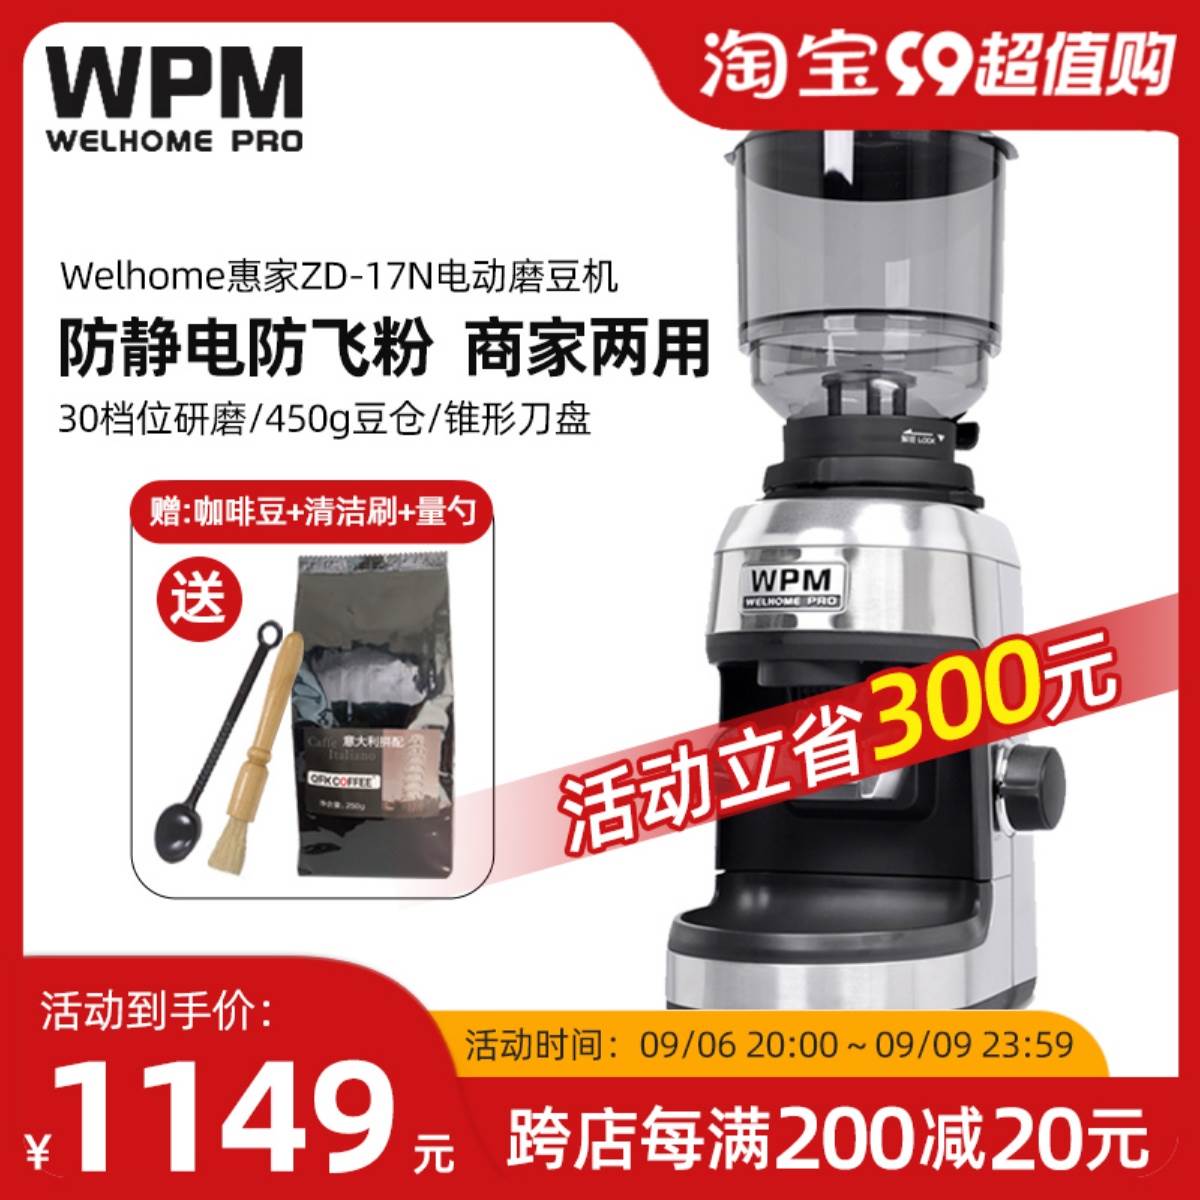 WPM/惠家磨豆机ZD-17N/15意式电动家商用专业全自动咖啡豆研磨机 餐饮具 磨豆机 原图主图